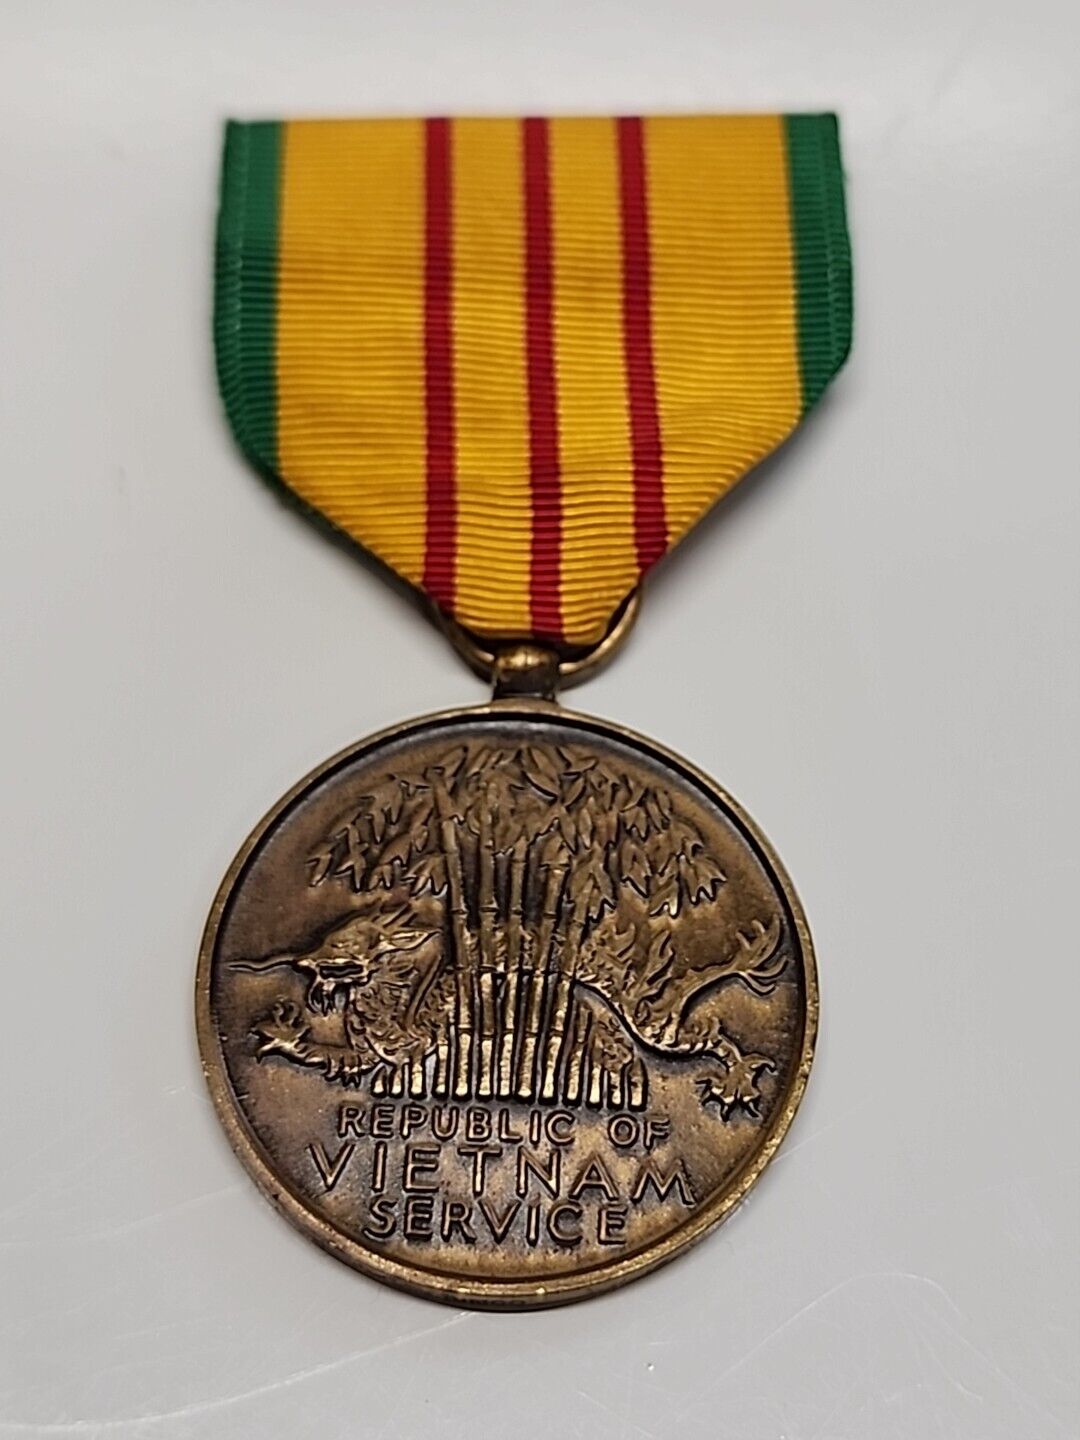 Original Vintage 1965-1973 Vietnam War Service Medal